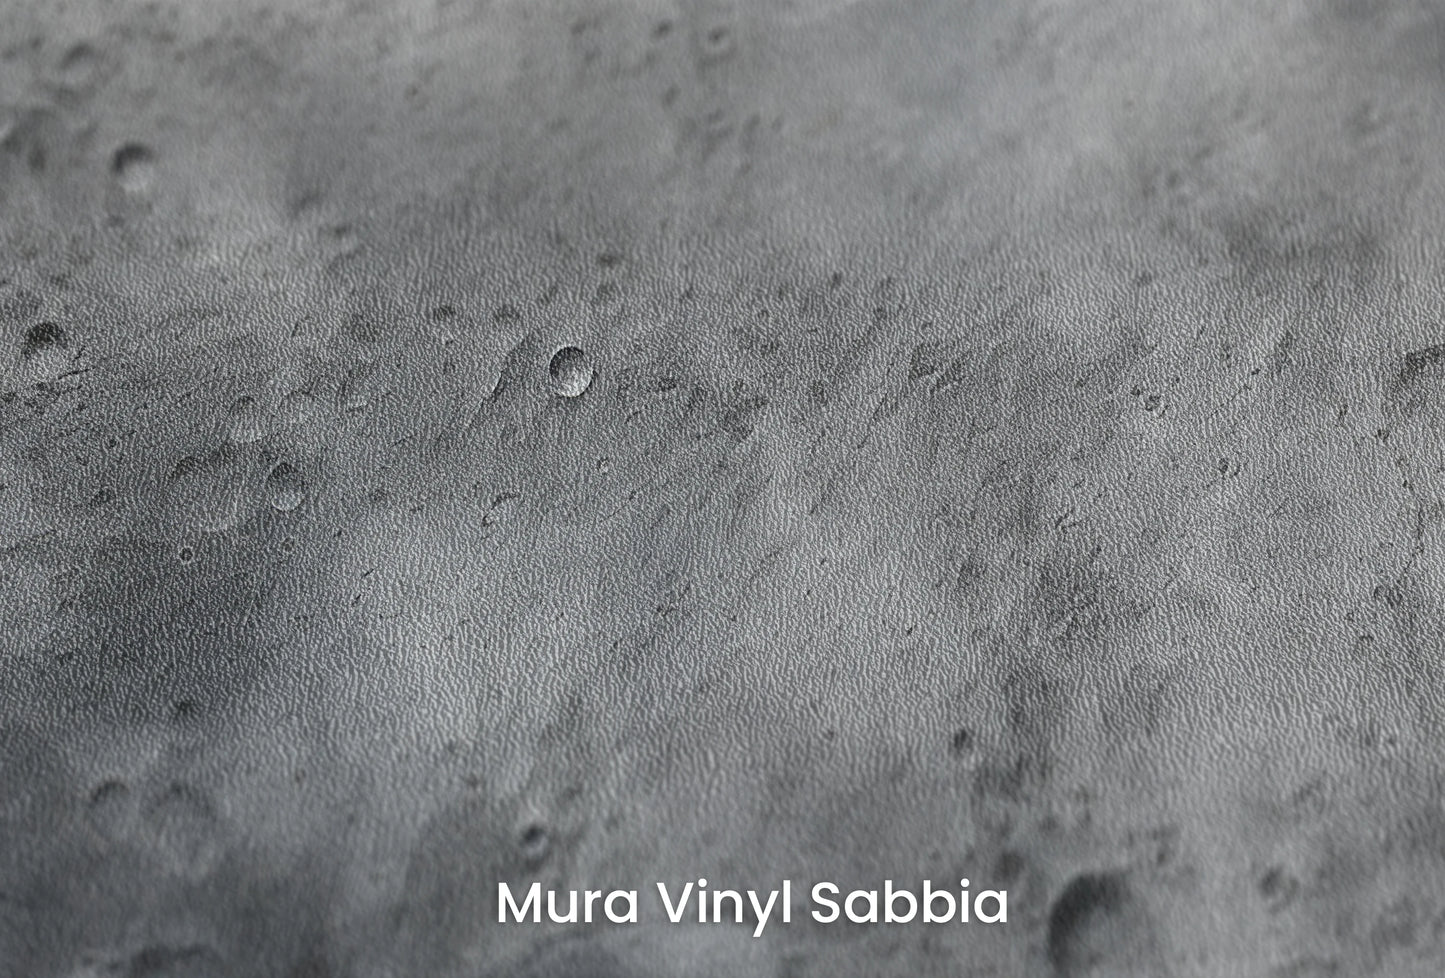 Zbliżenie na artystyczną fototapetę o nazwie Serene Nebula na podłożu Mura Vinyl Sabbia struktura grubego ziarna piasku.